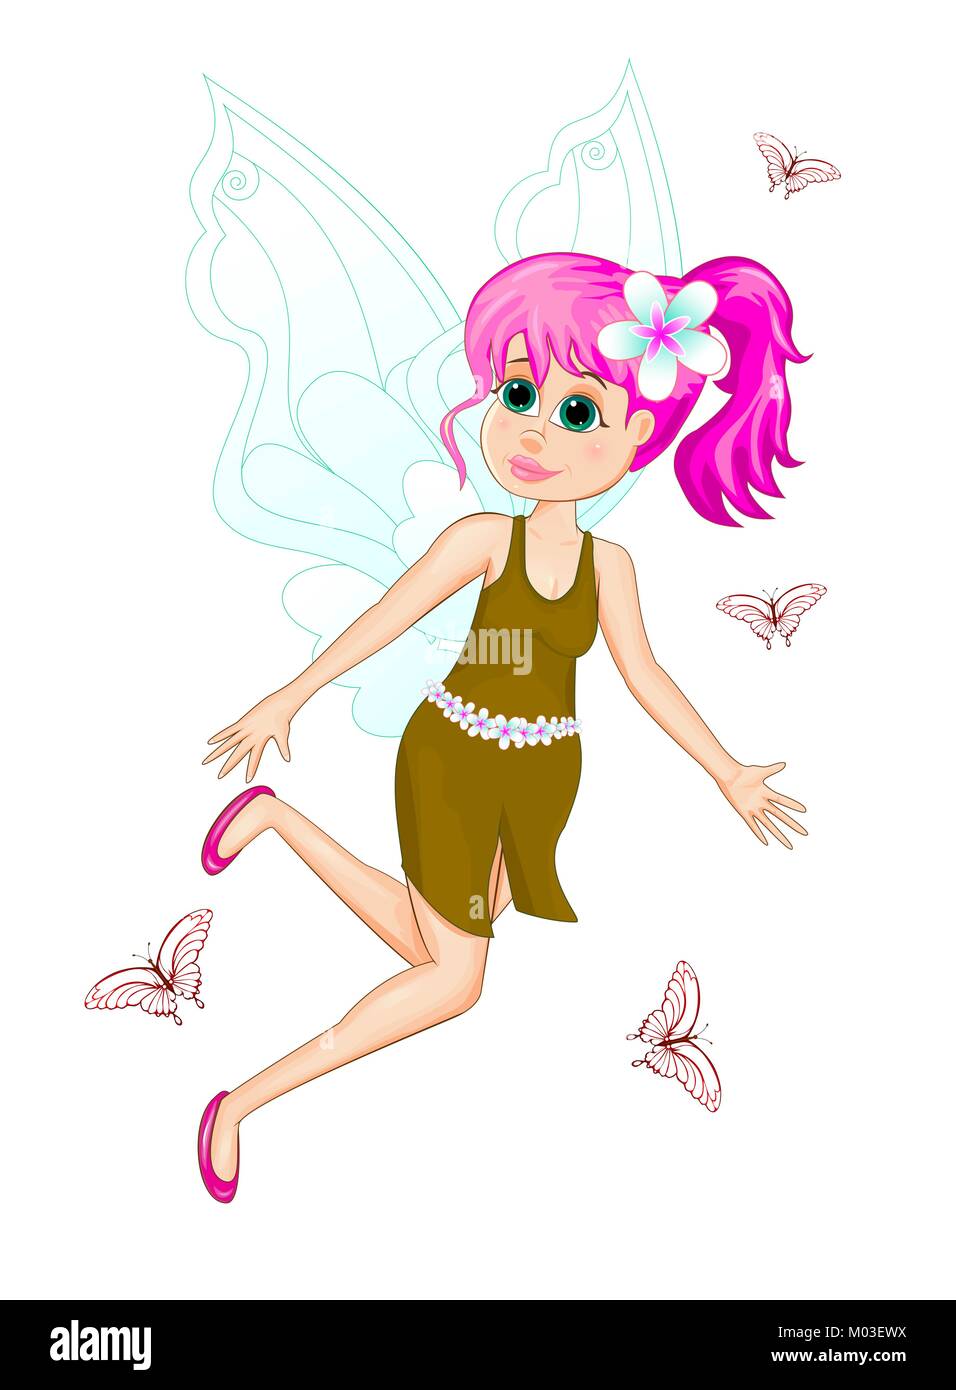 Cuento con su pelo de color rosa. Cartoon hada de vestido y con flor en el pelo sobre fondo blanco. Flying fairy y mariposas. Ilustración del Vector